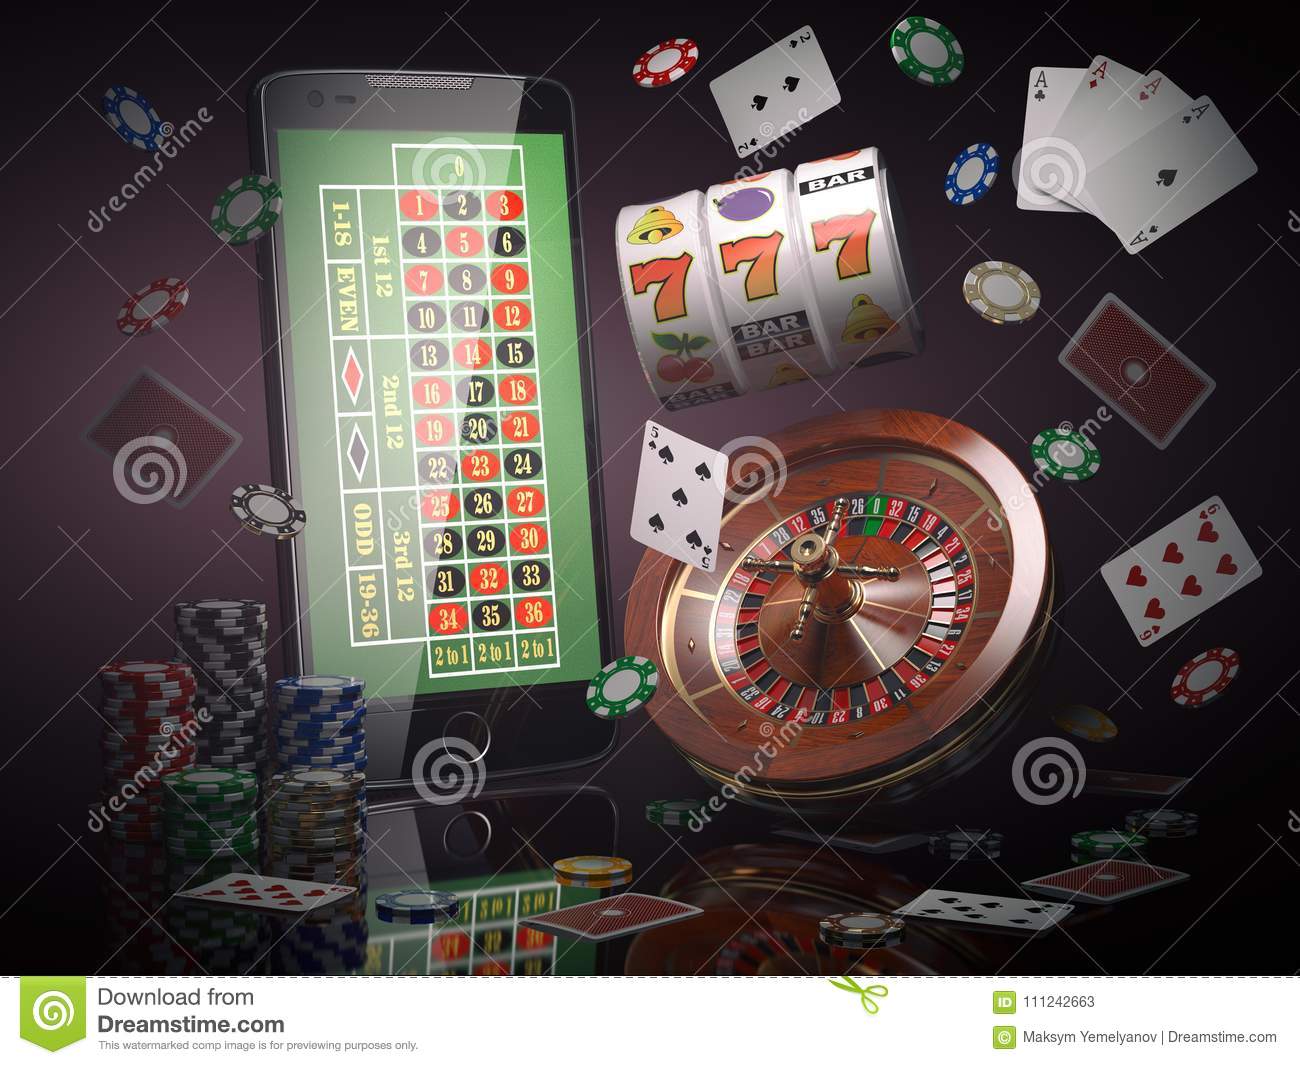 Evo spin casino